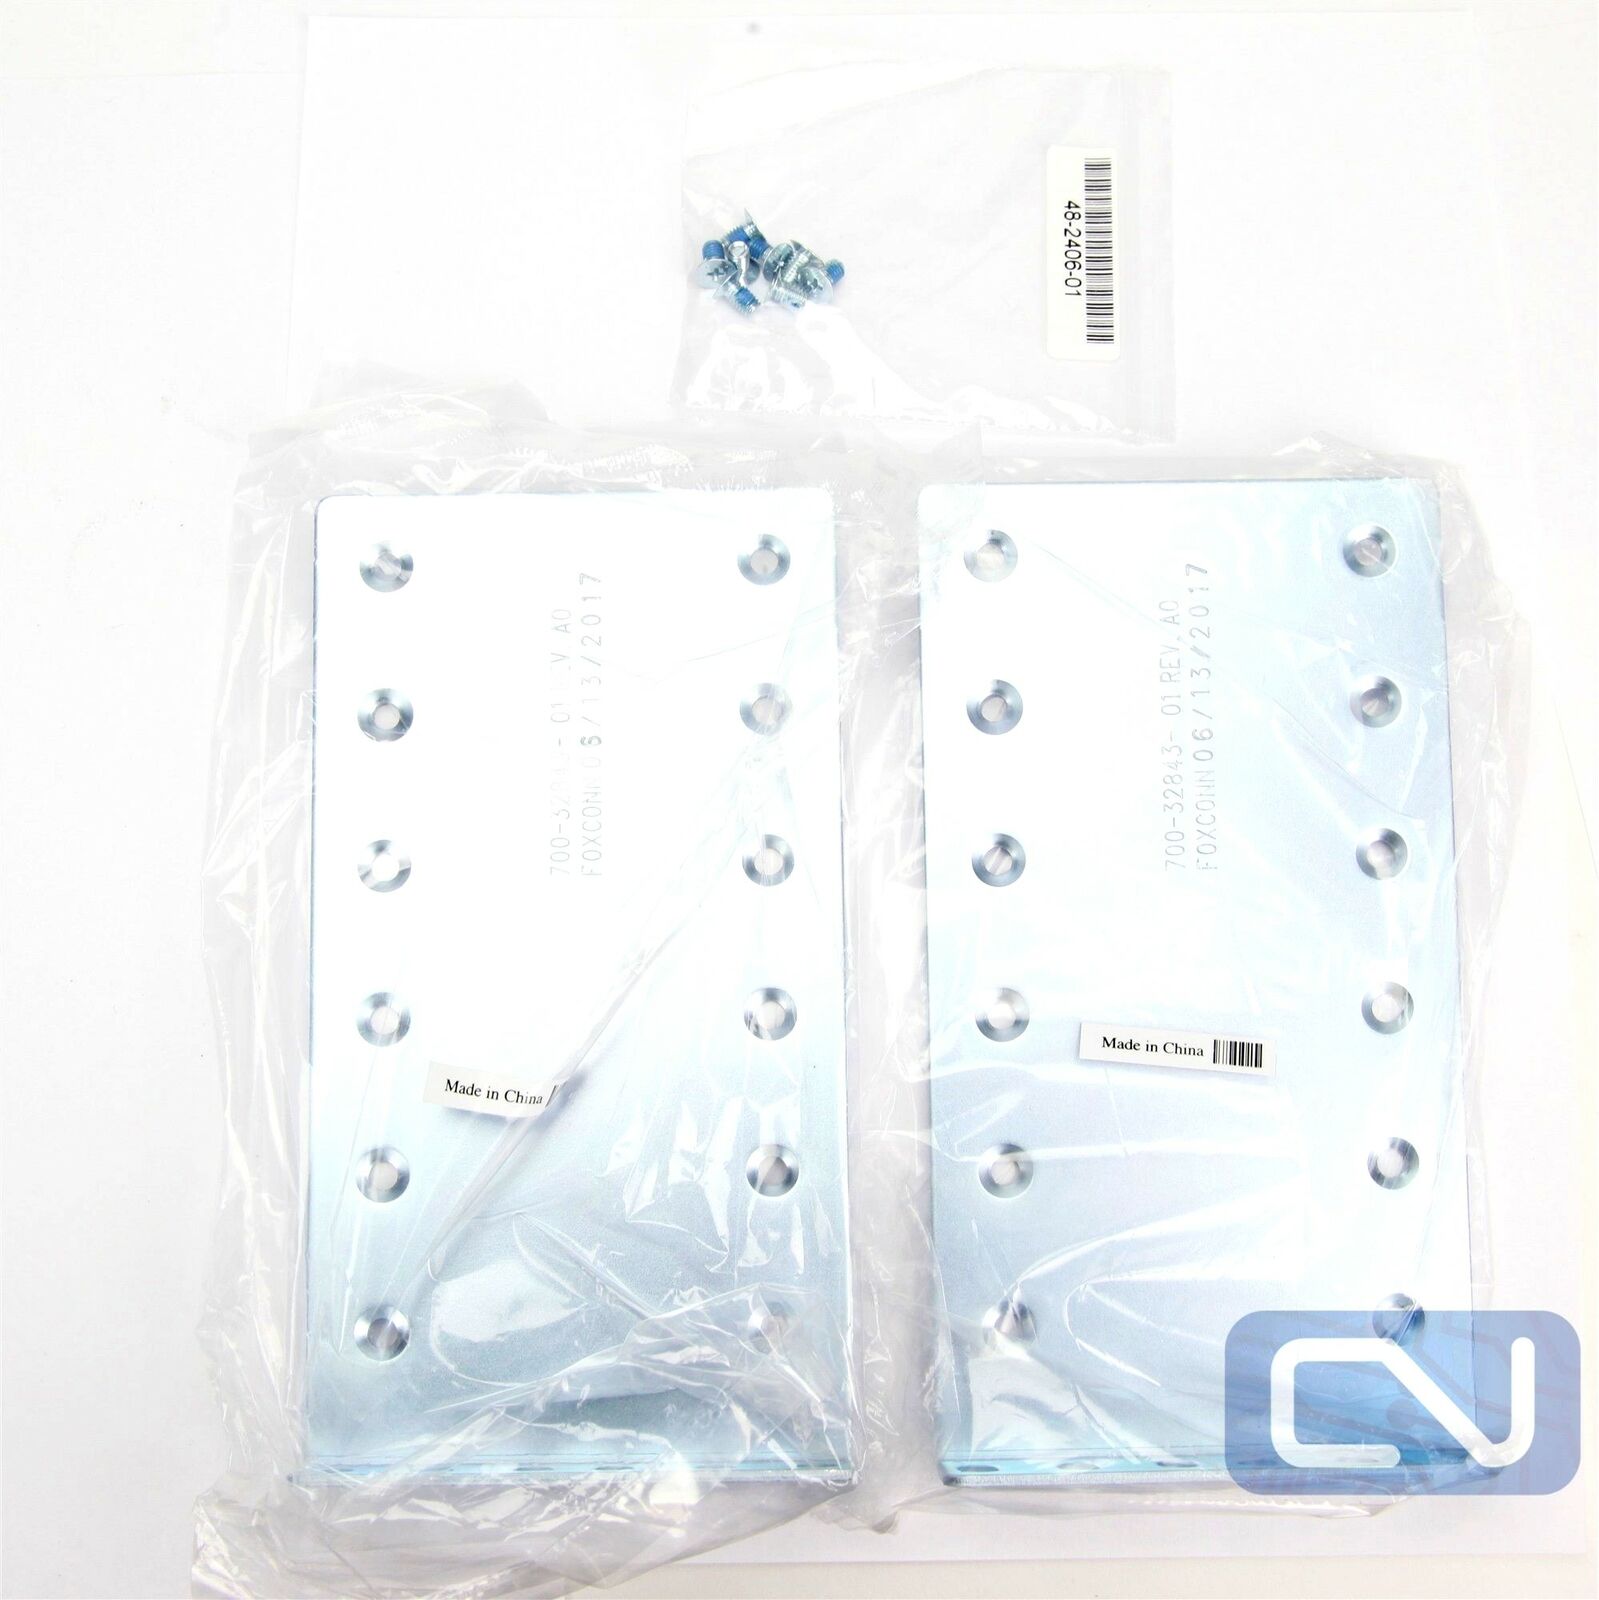 New Foxconn Pair 2u Rack Mount Bracket Ears 700-32843-01 Kit With Screws